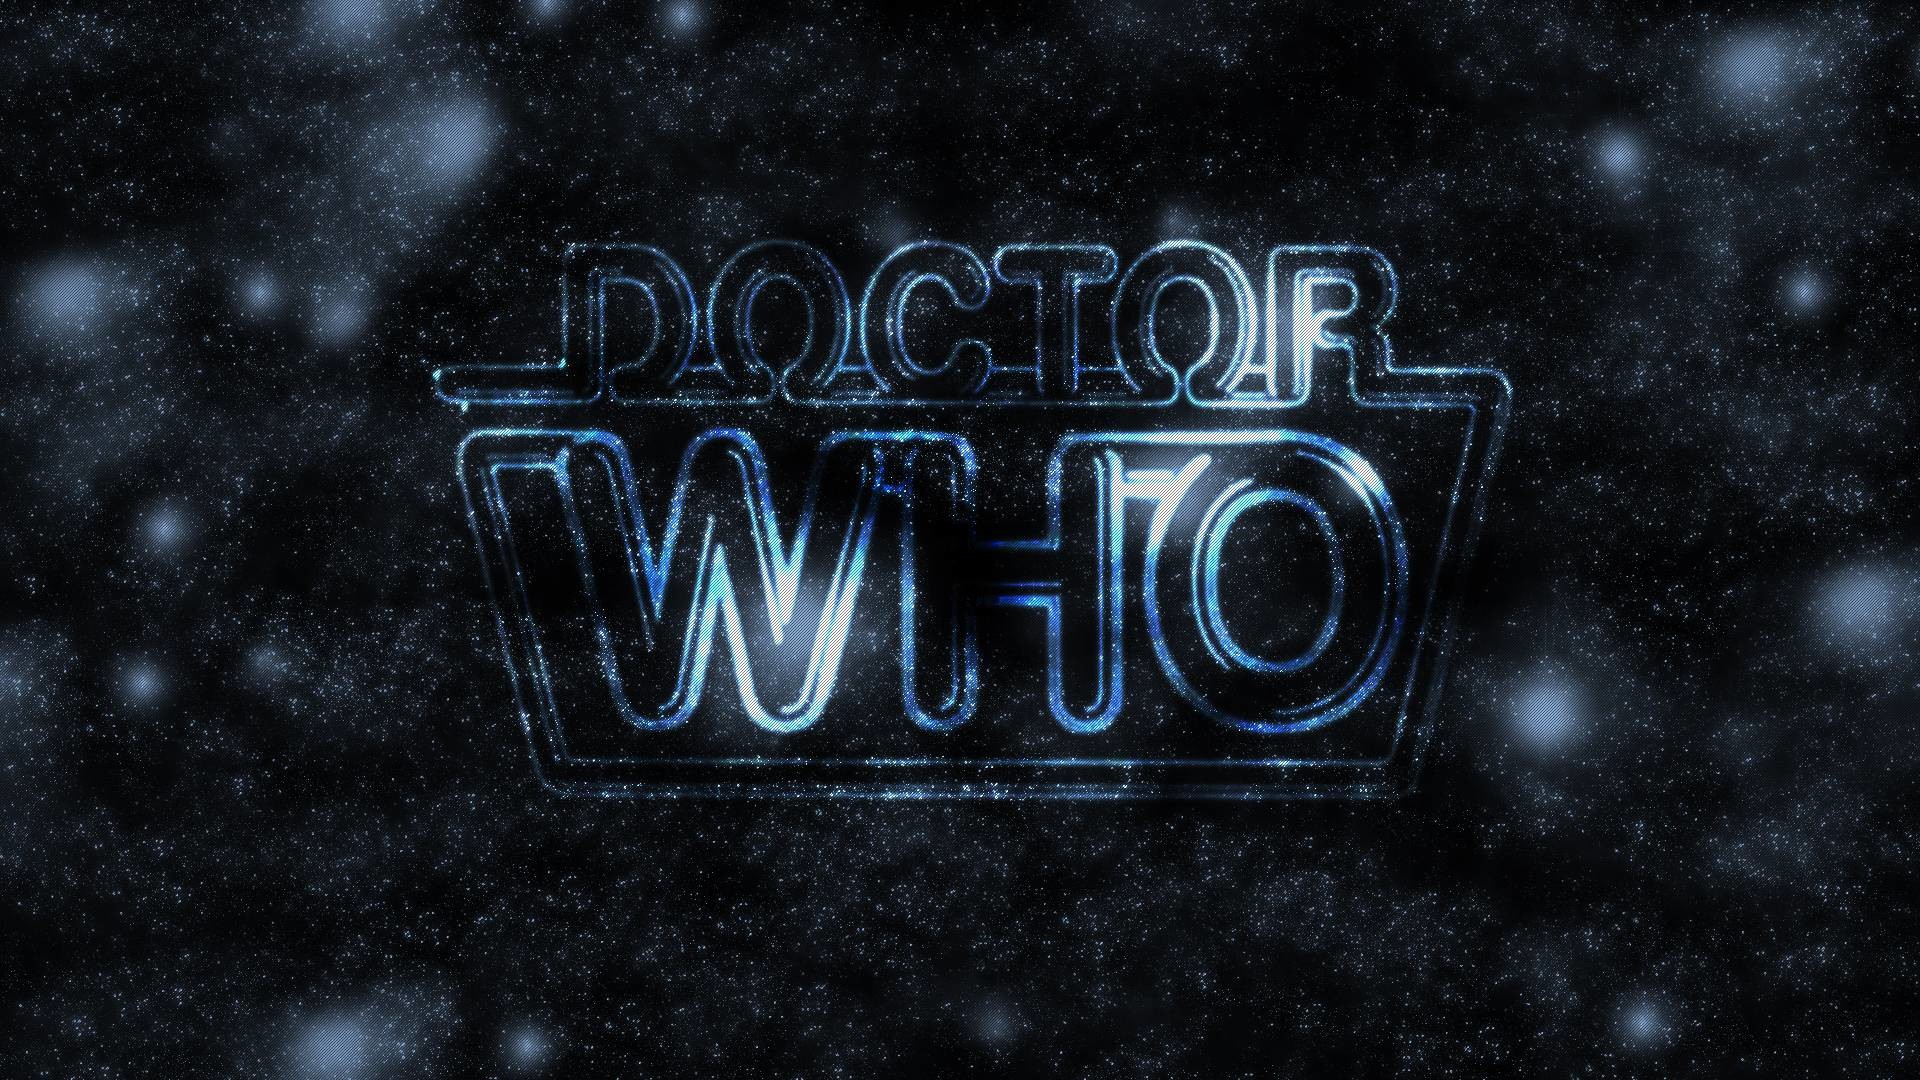 1920x1080 best doctor who logo wallpaper hd